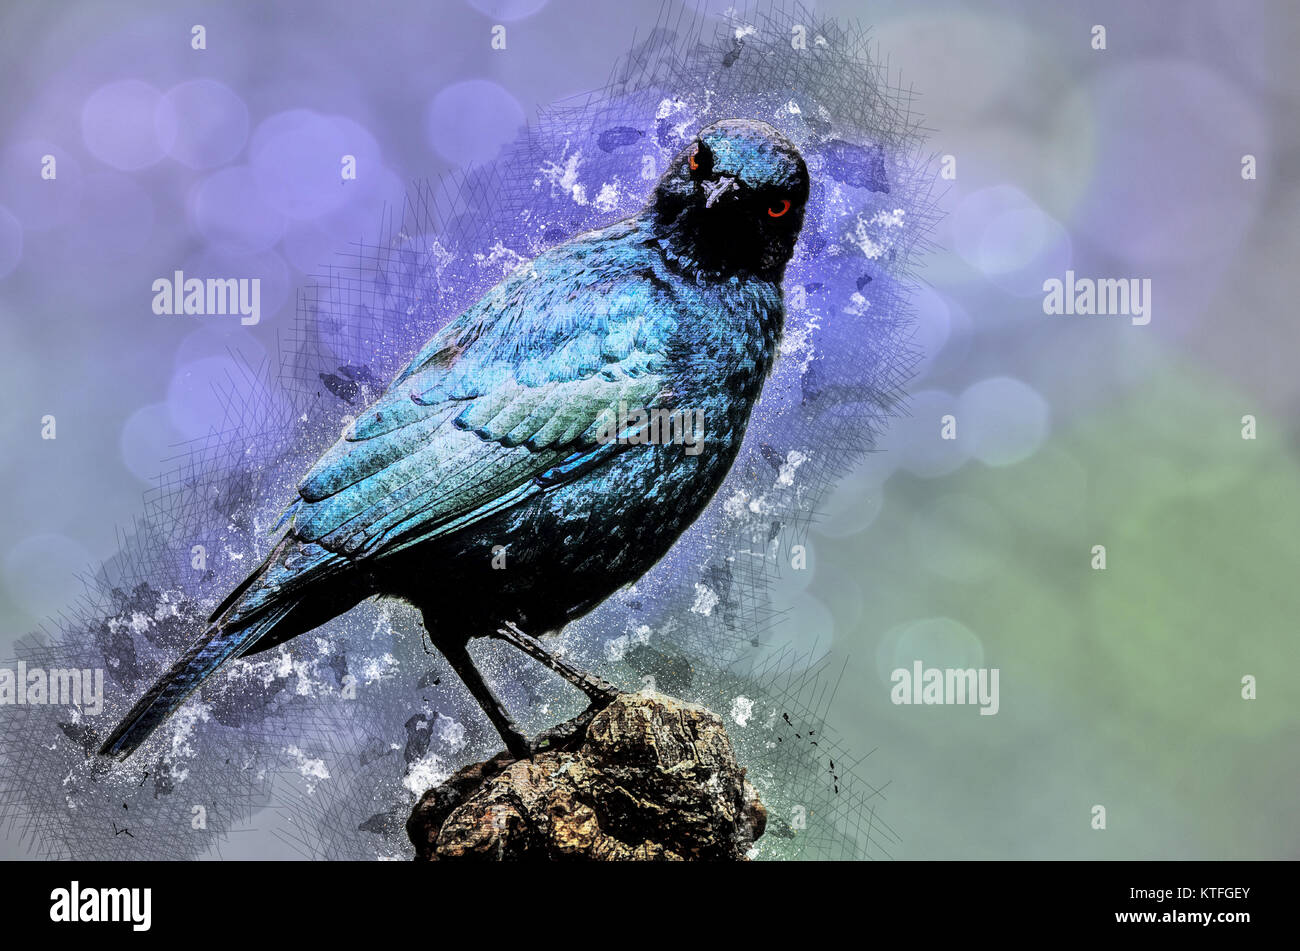 Migliorate digitalmente immagine di un capo glossy starling (Lamprotornis nitens). Questo starling si trova in tutta la maggior parte del Sud Africa. Come tutti i starling Foto Stock